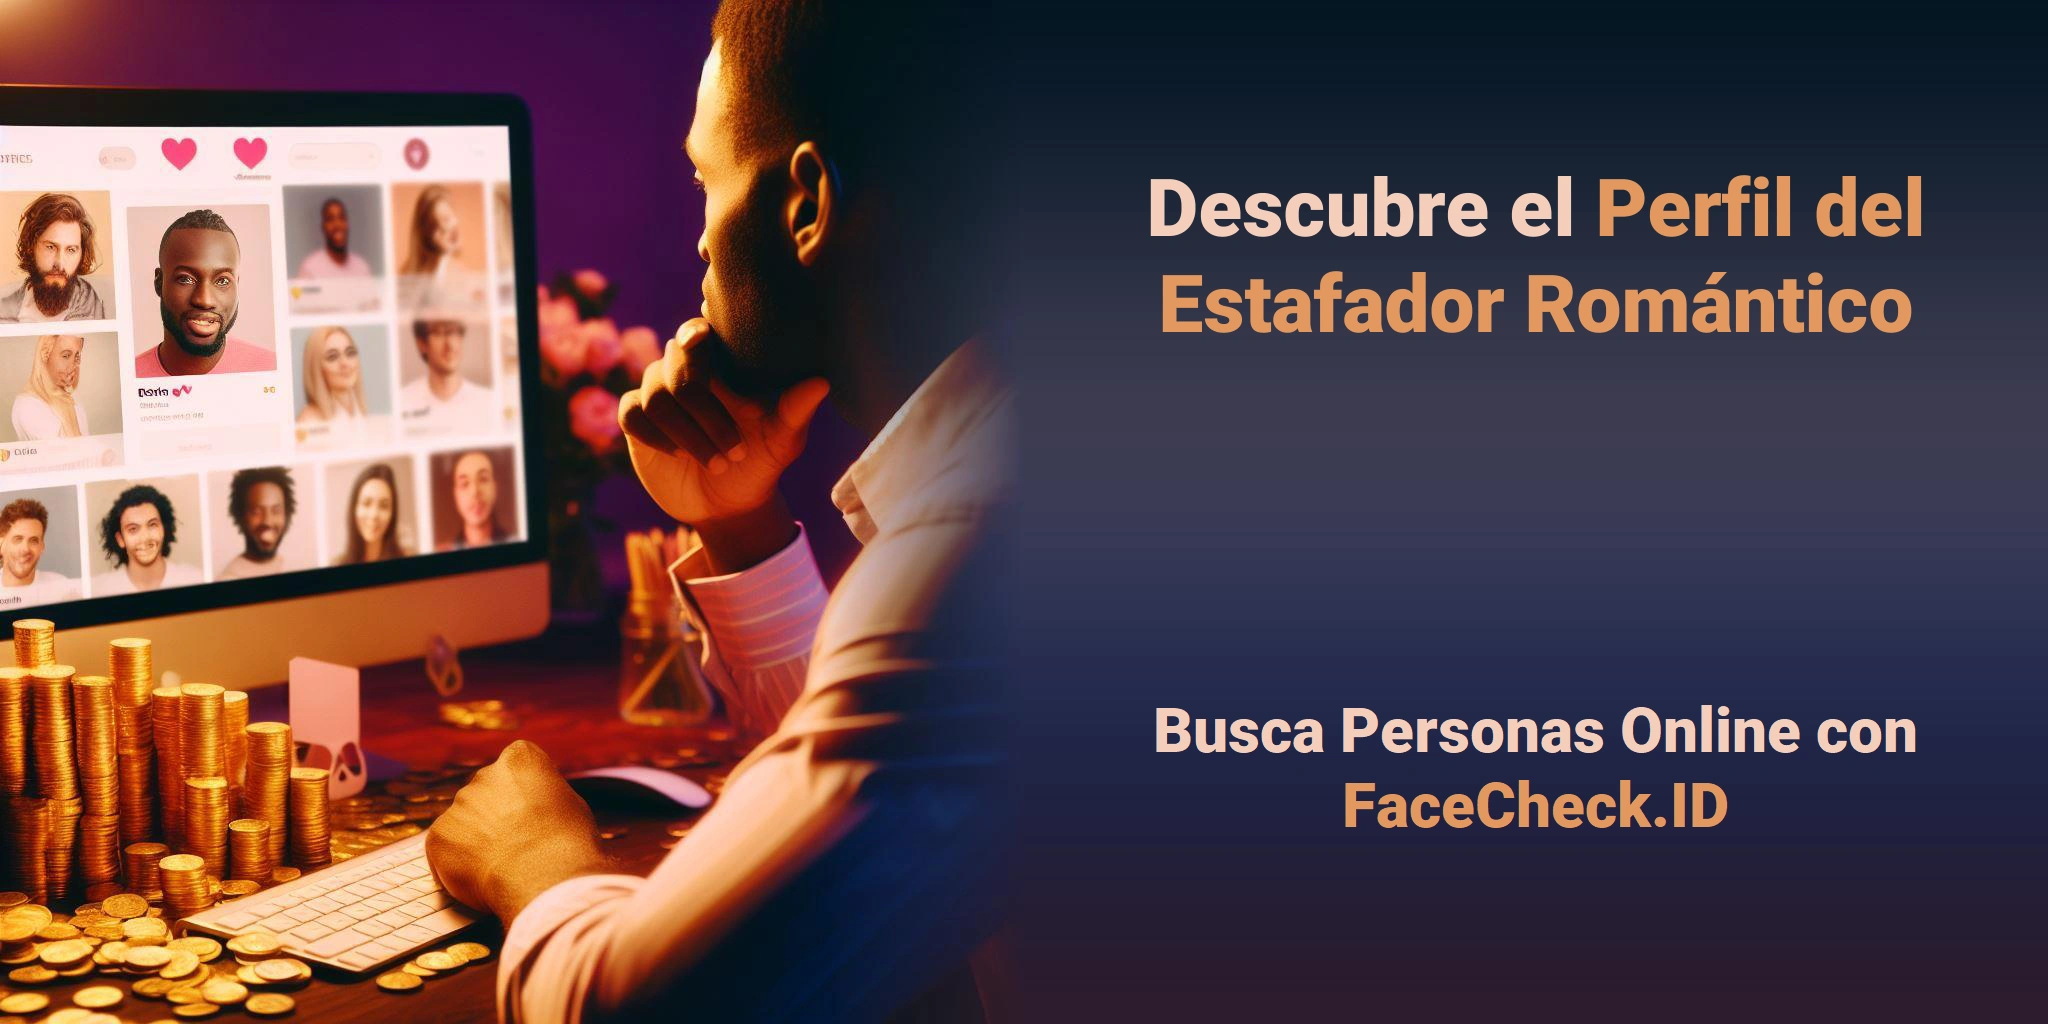 Descubre el Perfil del Estafador Romántico Busca Personas Online con FaceCheck.ID